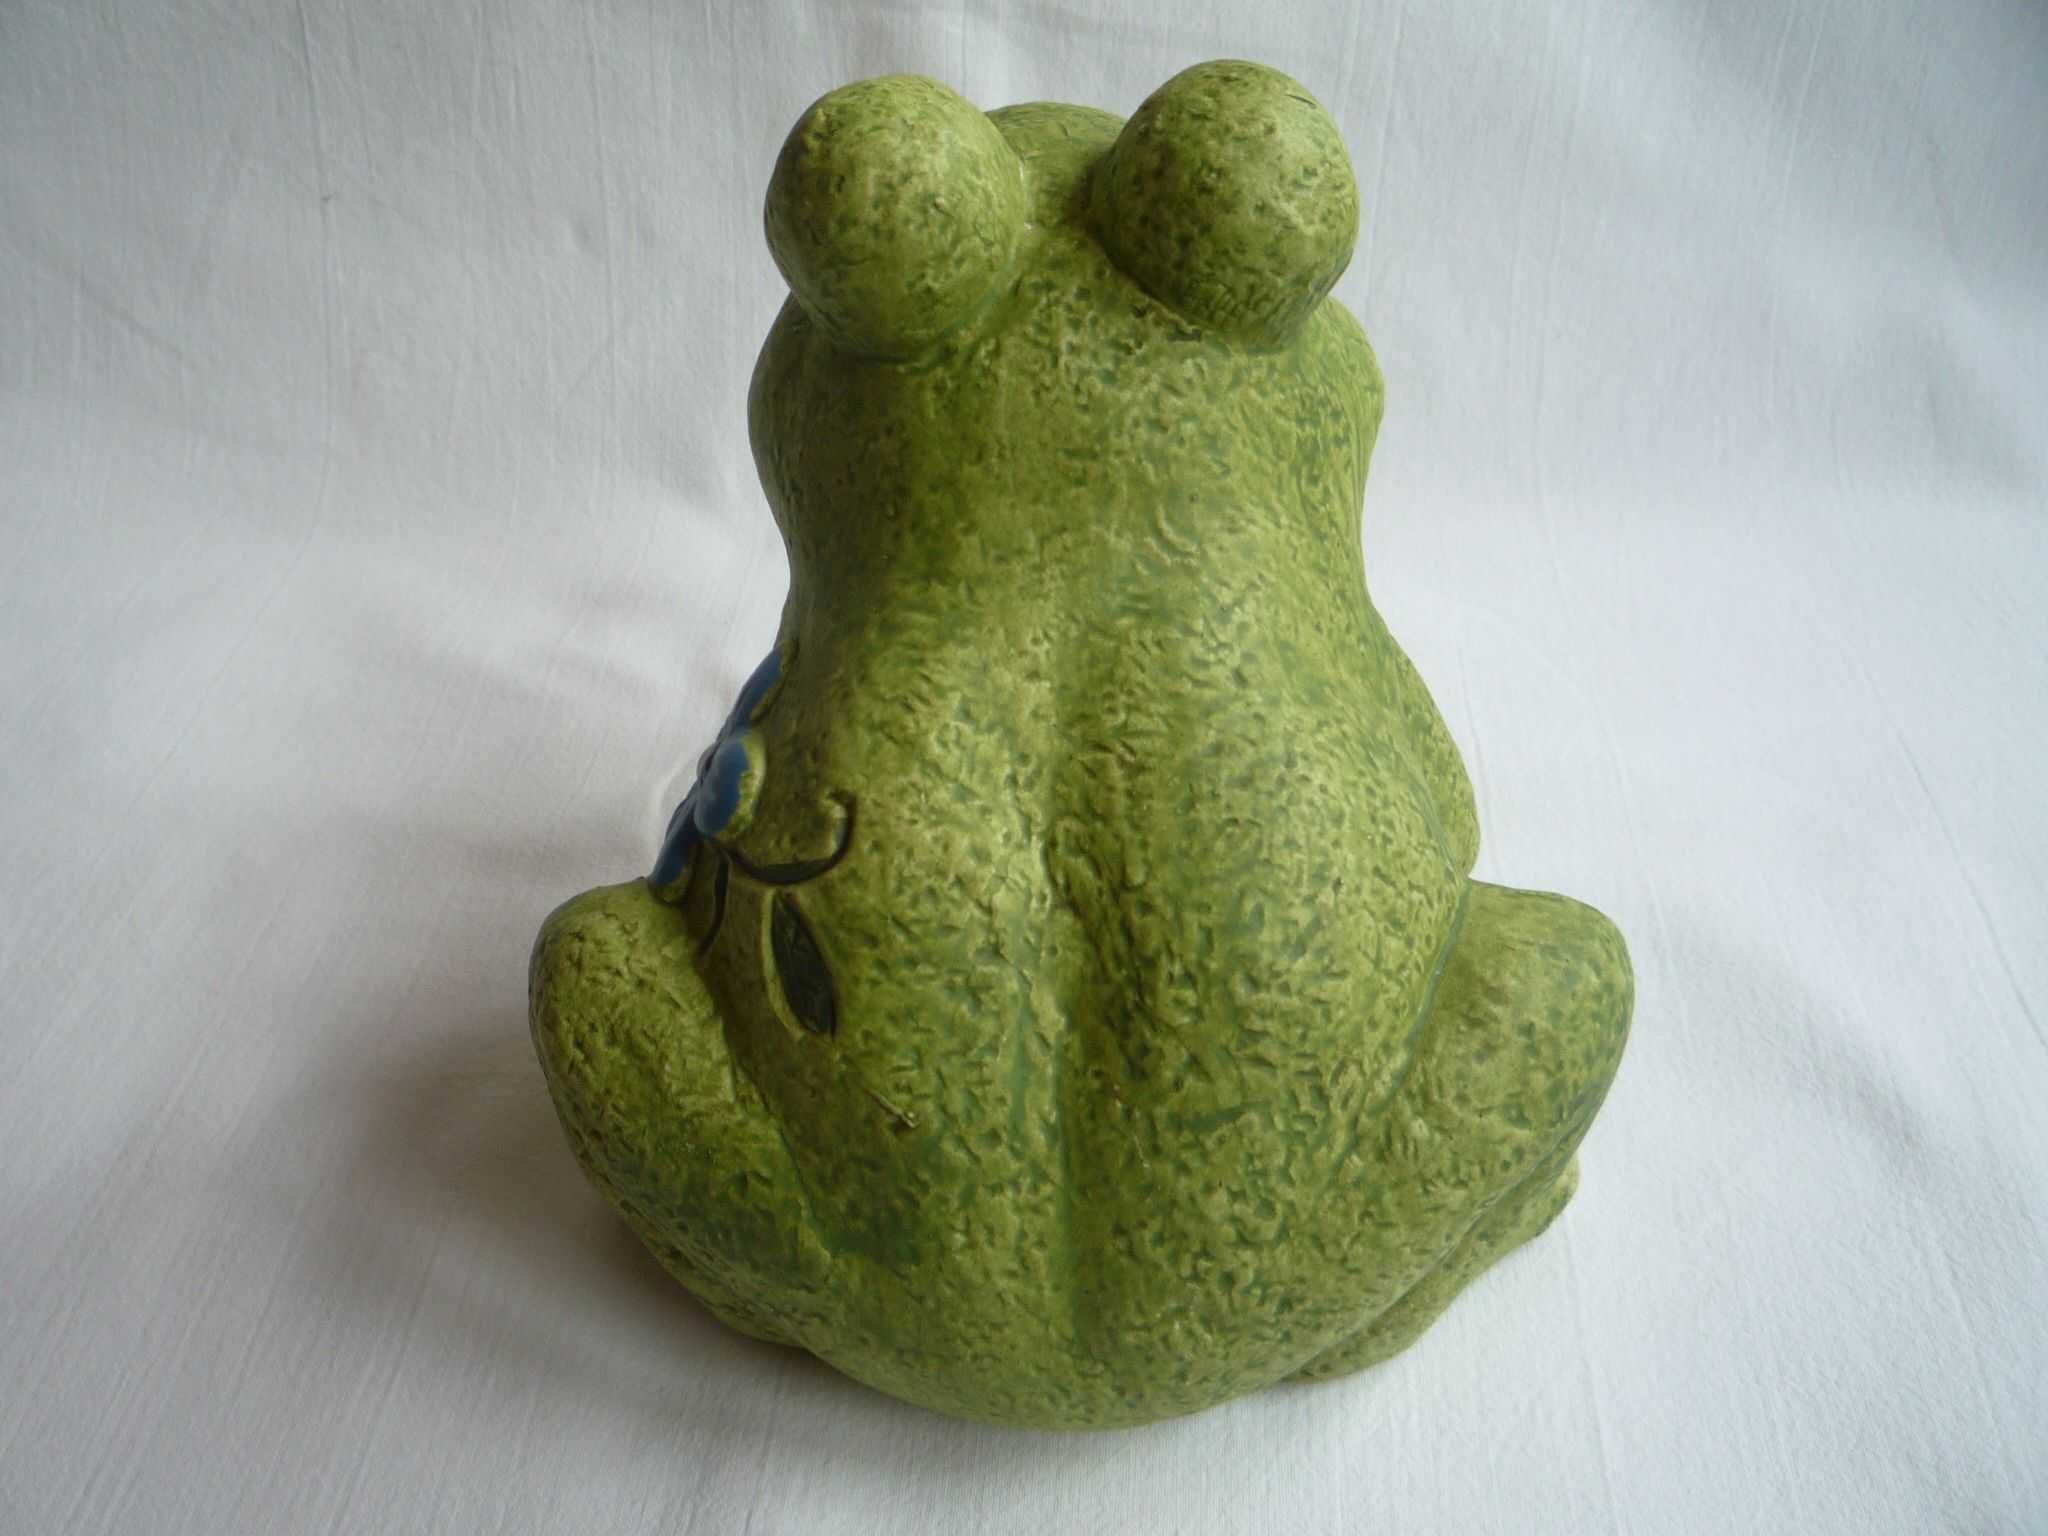 NOWA Żaba Żabka zielona figurka ceramika dla Kolekcjonera